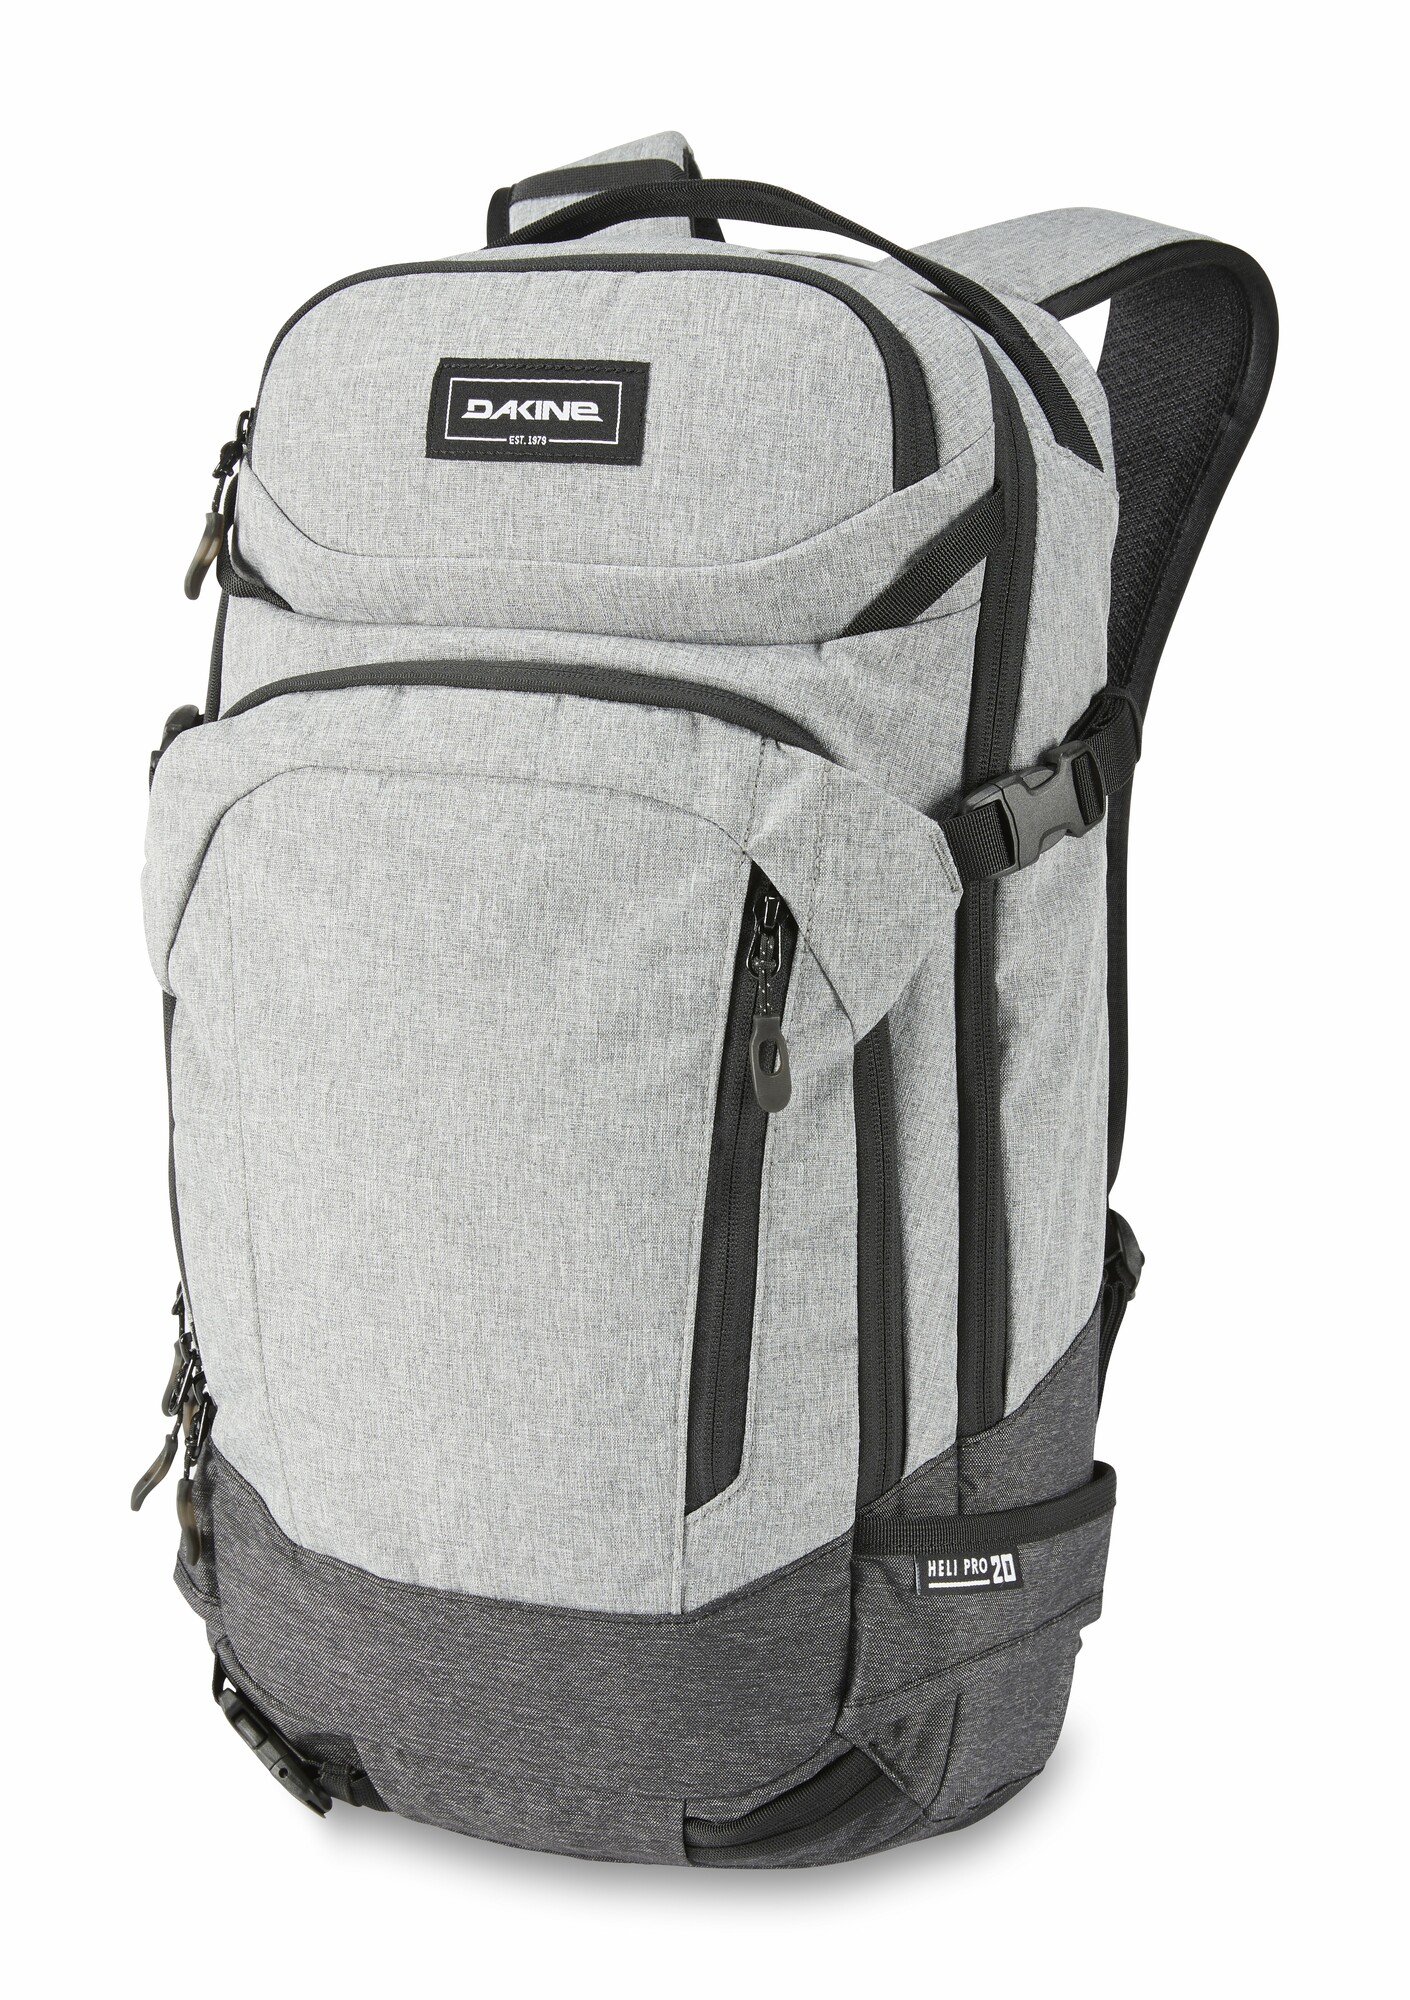 Dakine Heli Pro 20L backpack greyscale